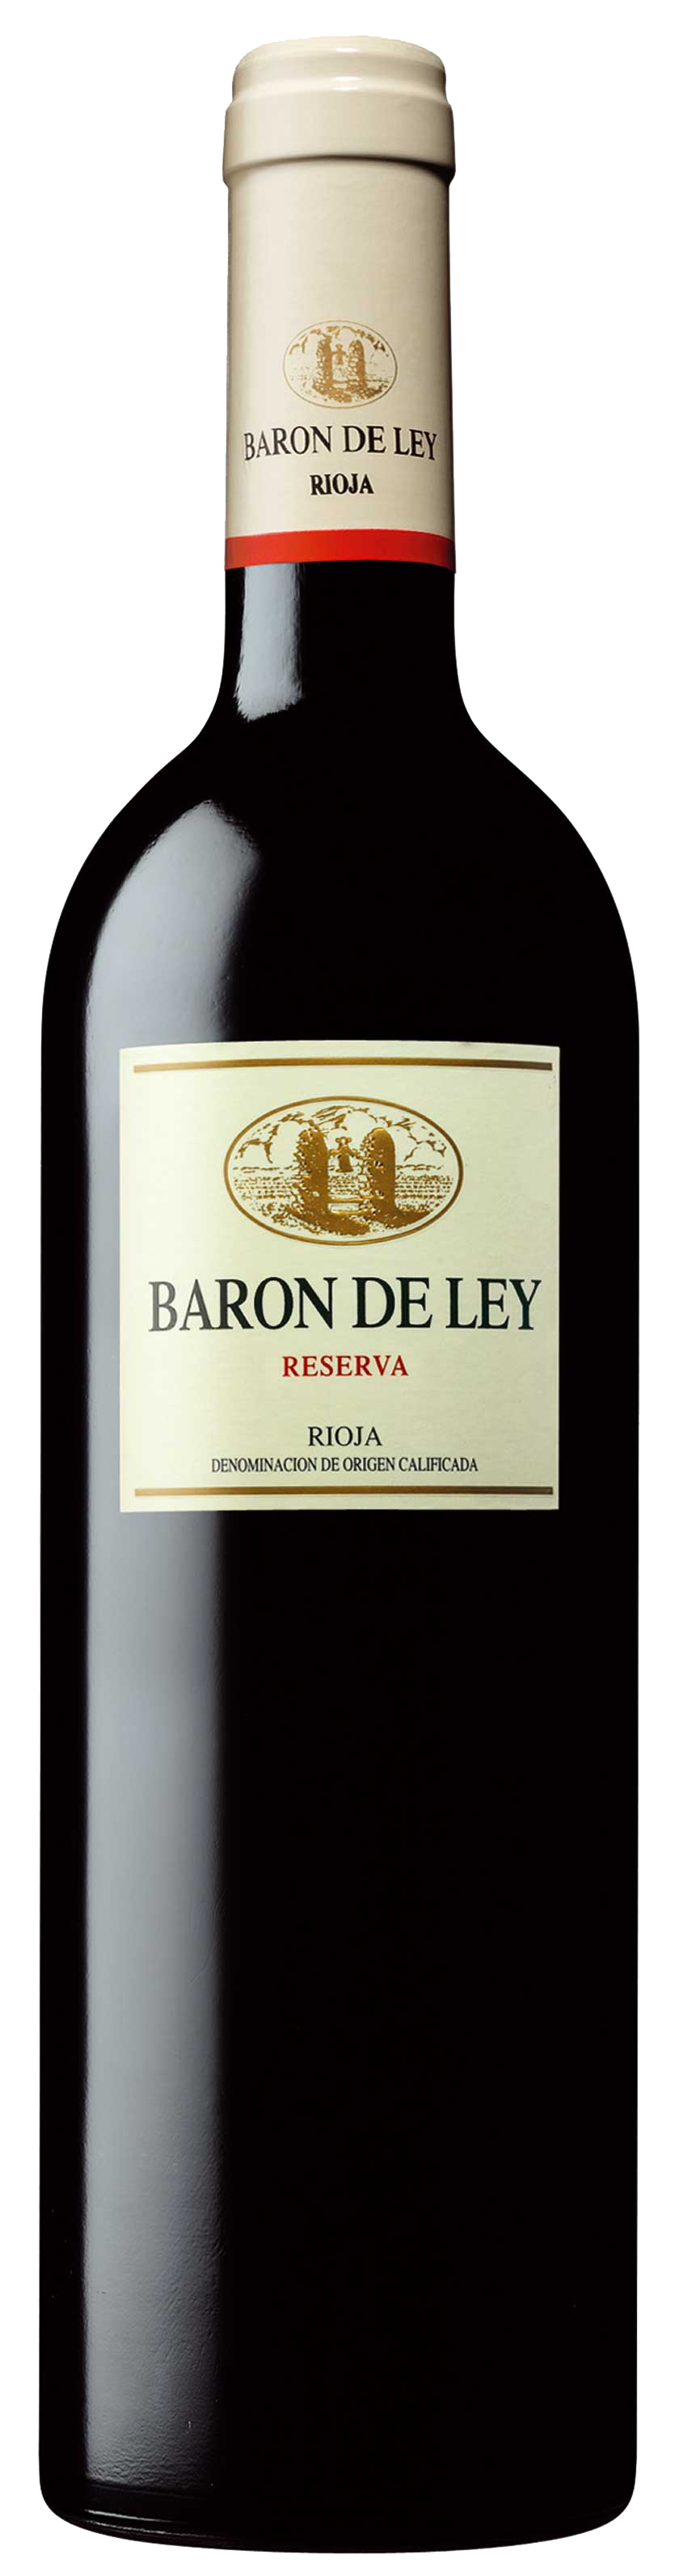 Off the vine: Baron de Ley Reserva Rioja